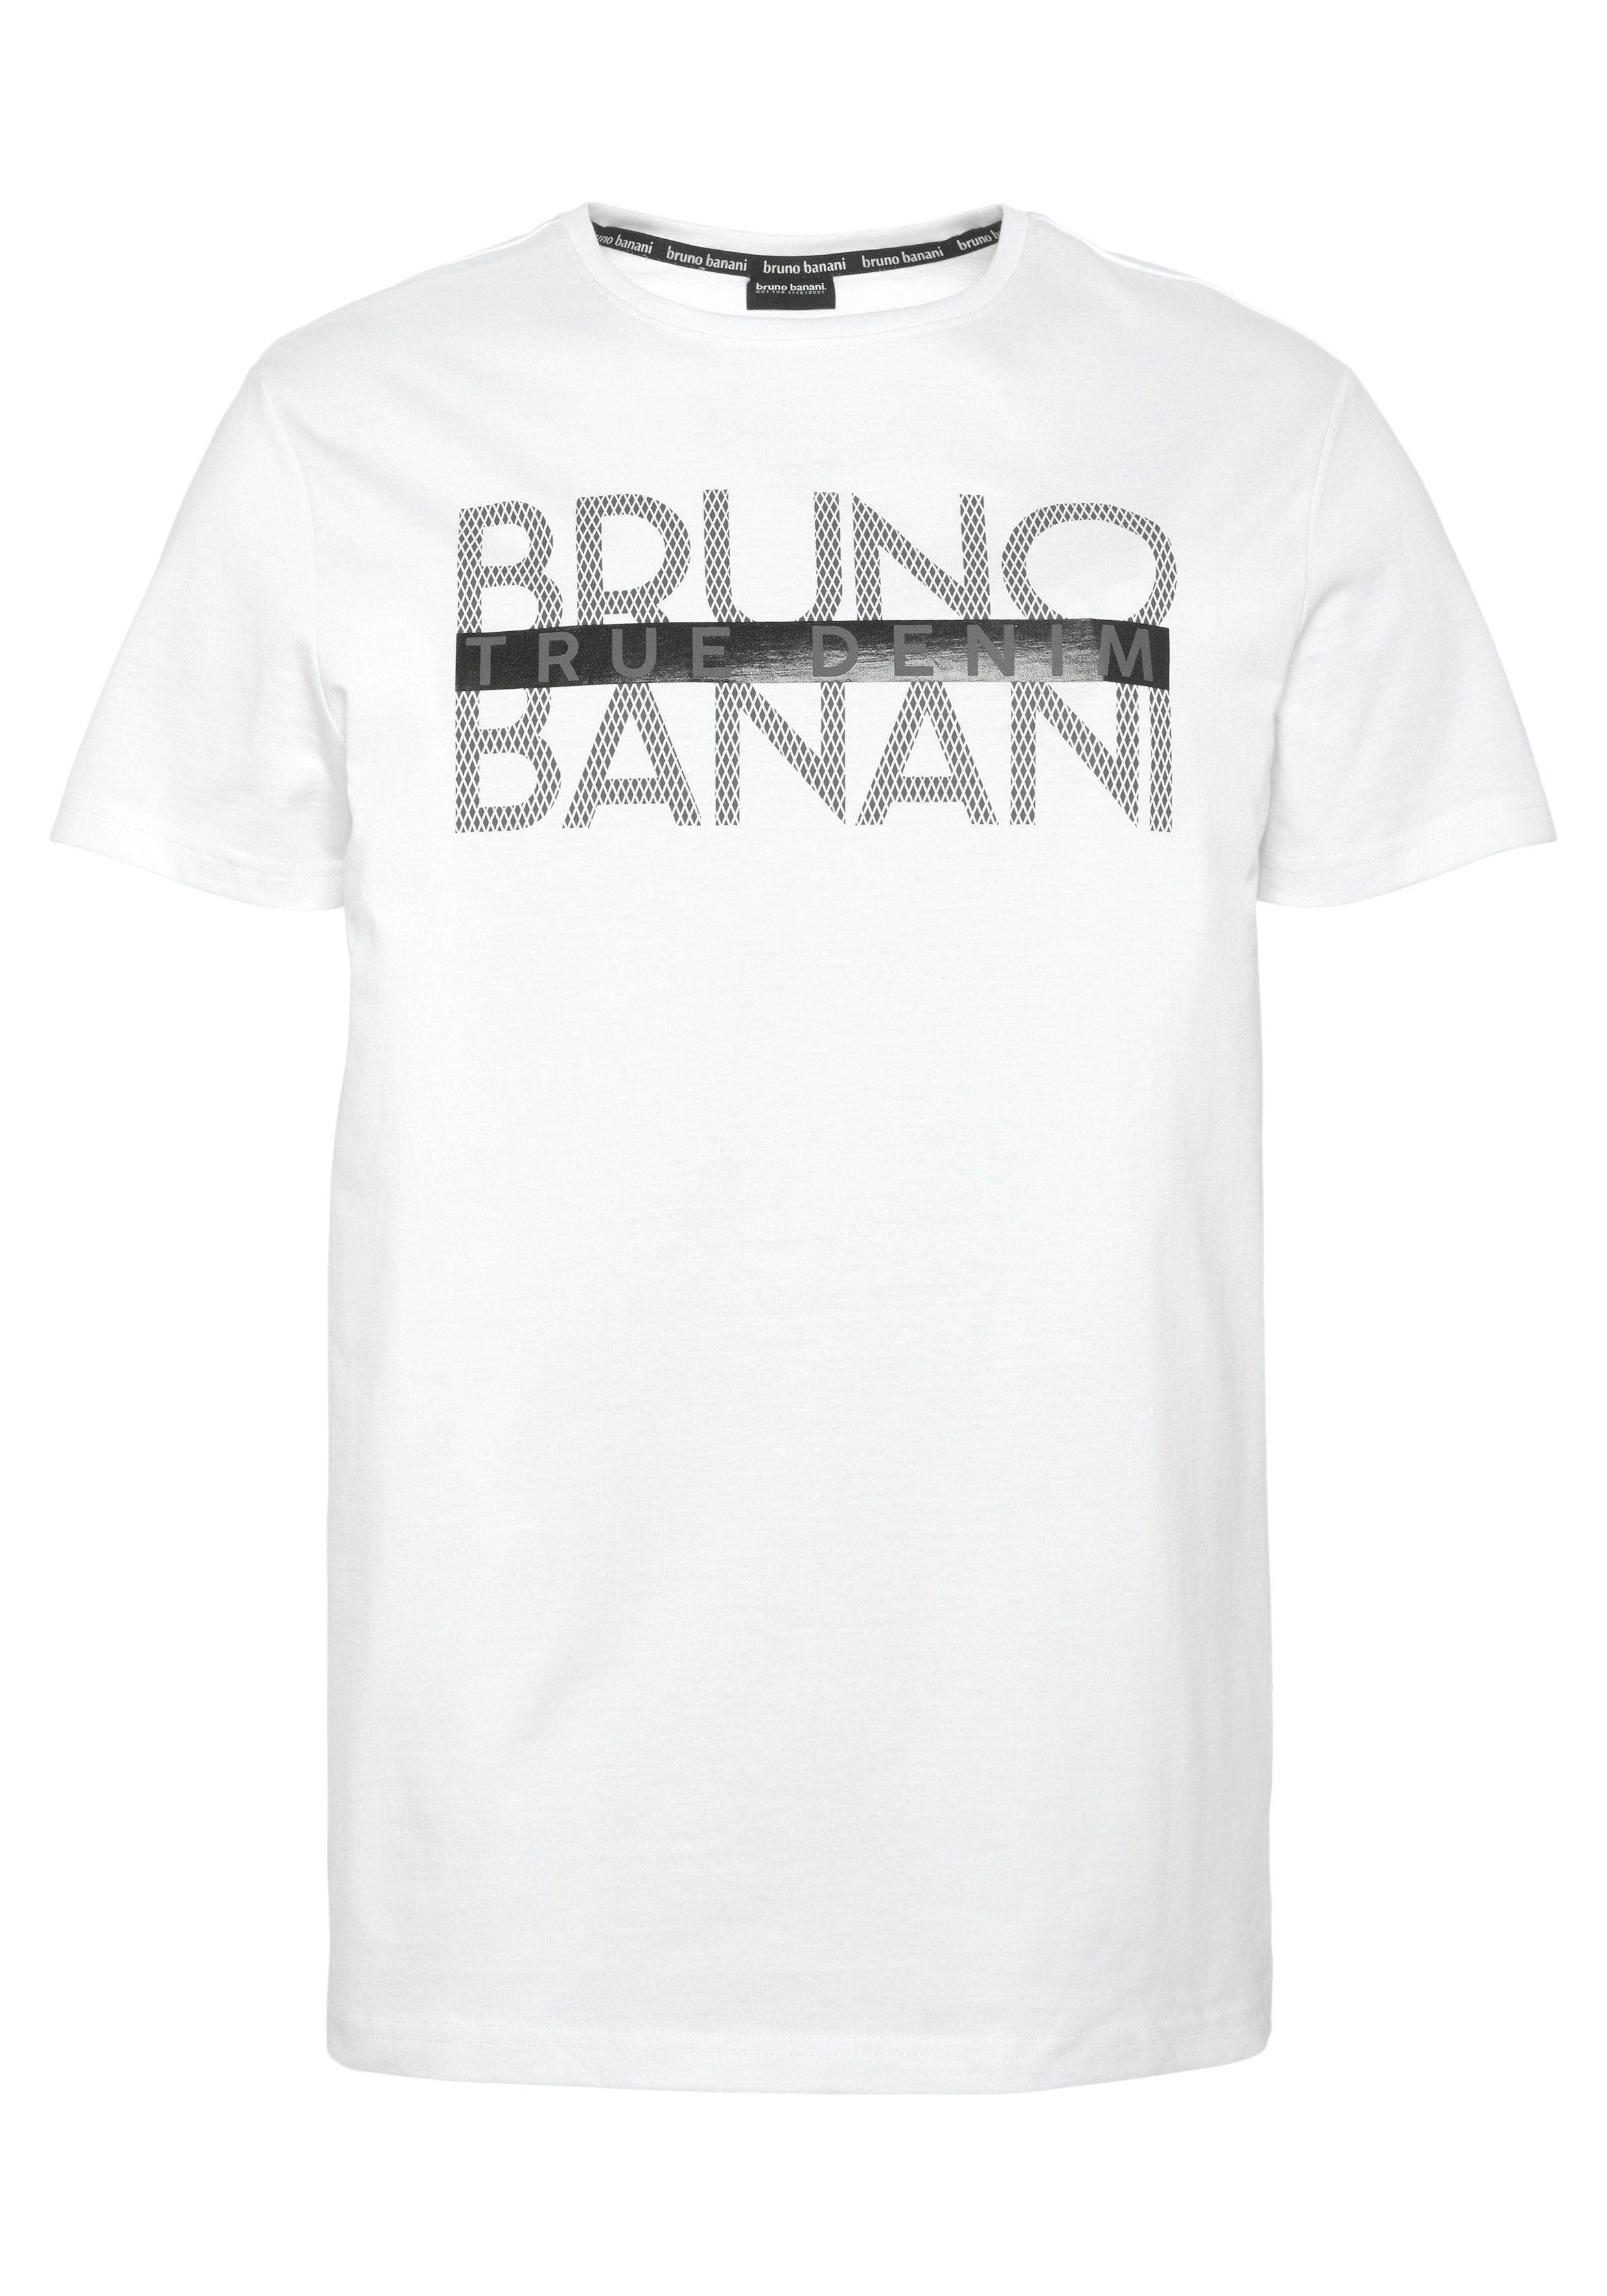 Bruno T-Shirt glänzendem mit Banani Print weiß